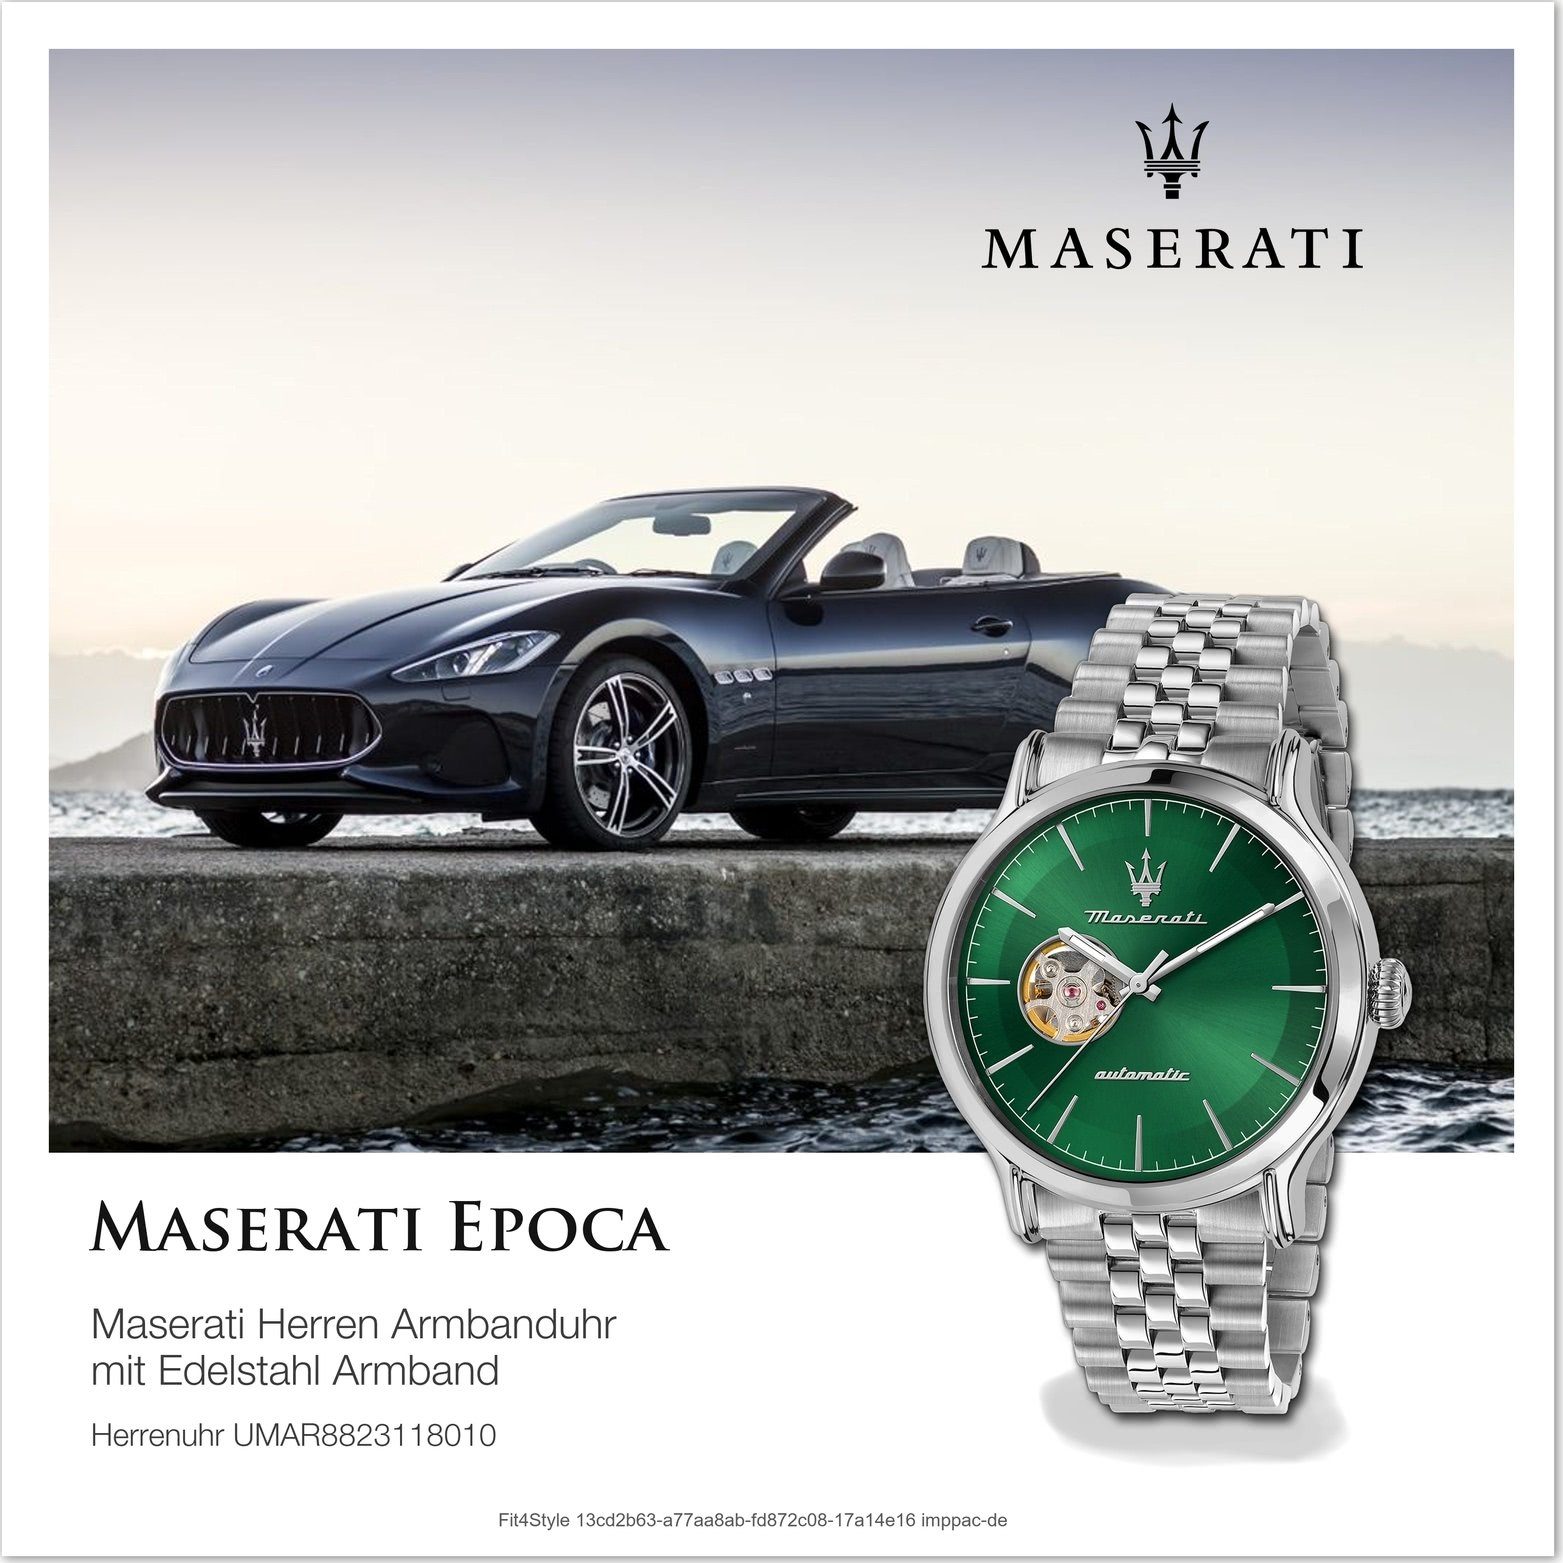 MASERATI Quarzuhr Armbanduhr 42mm) Epoca, Herren grau, groß Herrenuhr Maserati Edelstahlarmband, rundes (ca. grün Gehäuse